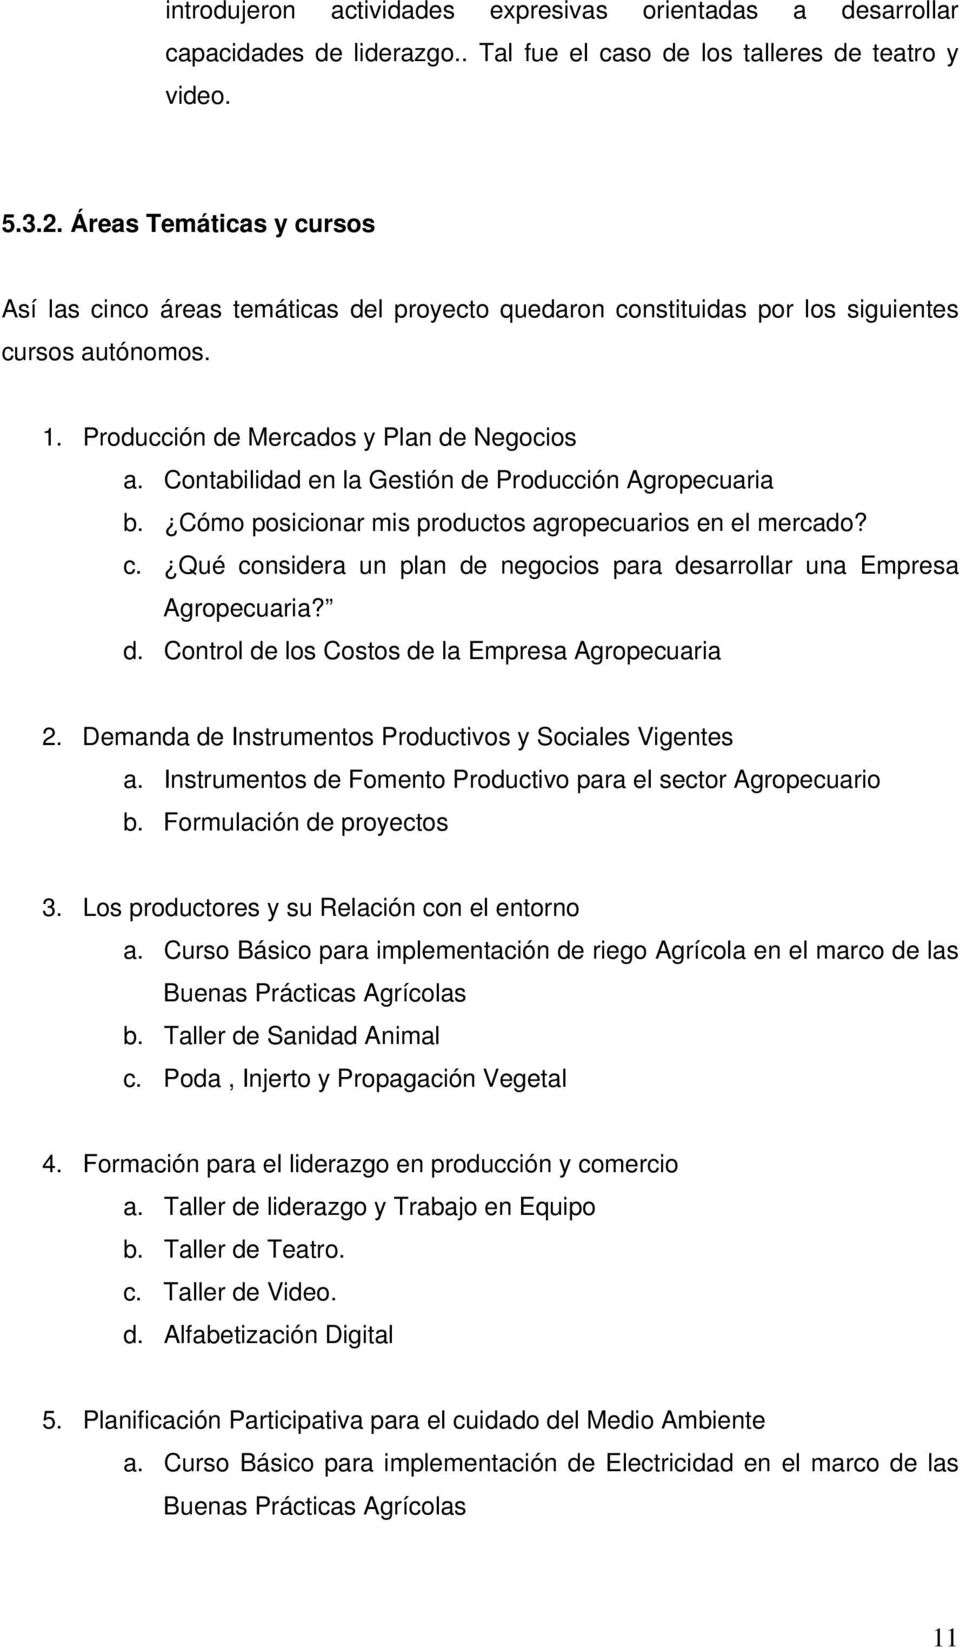 Contabilidad en la Gestión de Producción Agropecuaria b. Cómo posicionar mis productos agropecuarios en el mercado? c. Qué considera un plan de negocios para desarrollar una Empresa Agropecuaria? d. Control de los Costos de la Empresa Agropecuaria 2.